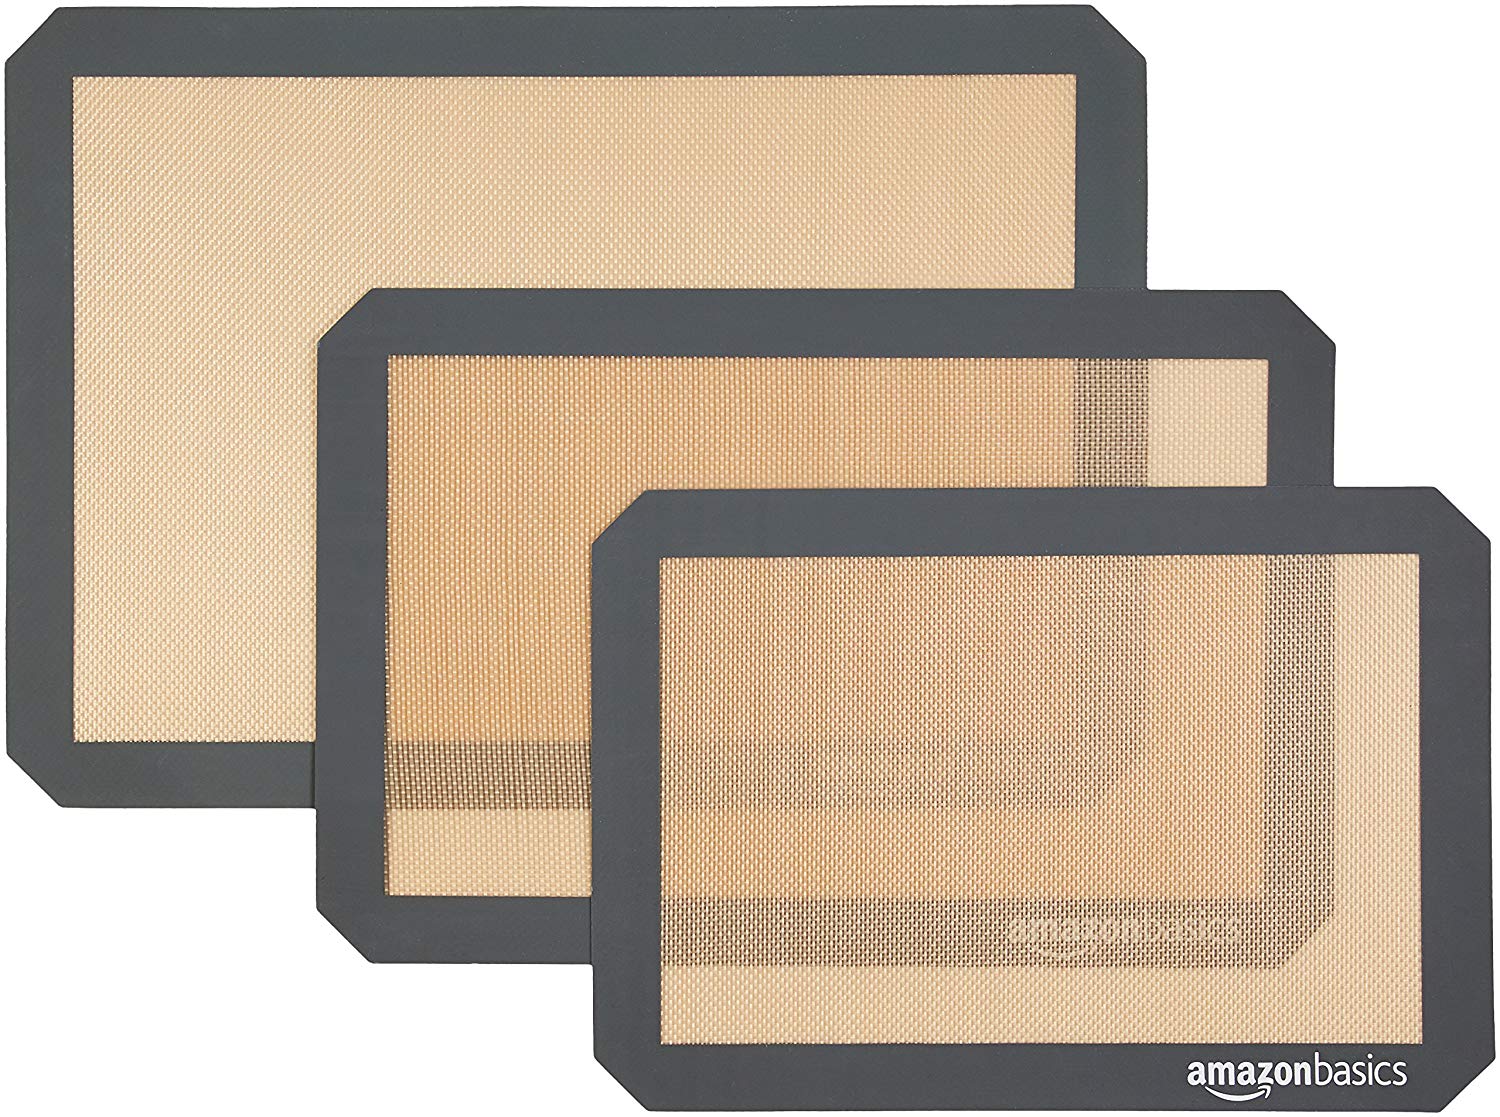 Copy of AmazonBasics Silicone Baking Mat - 3-Piece Set